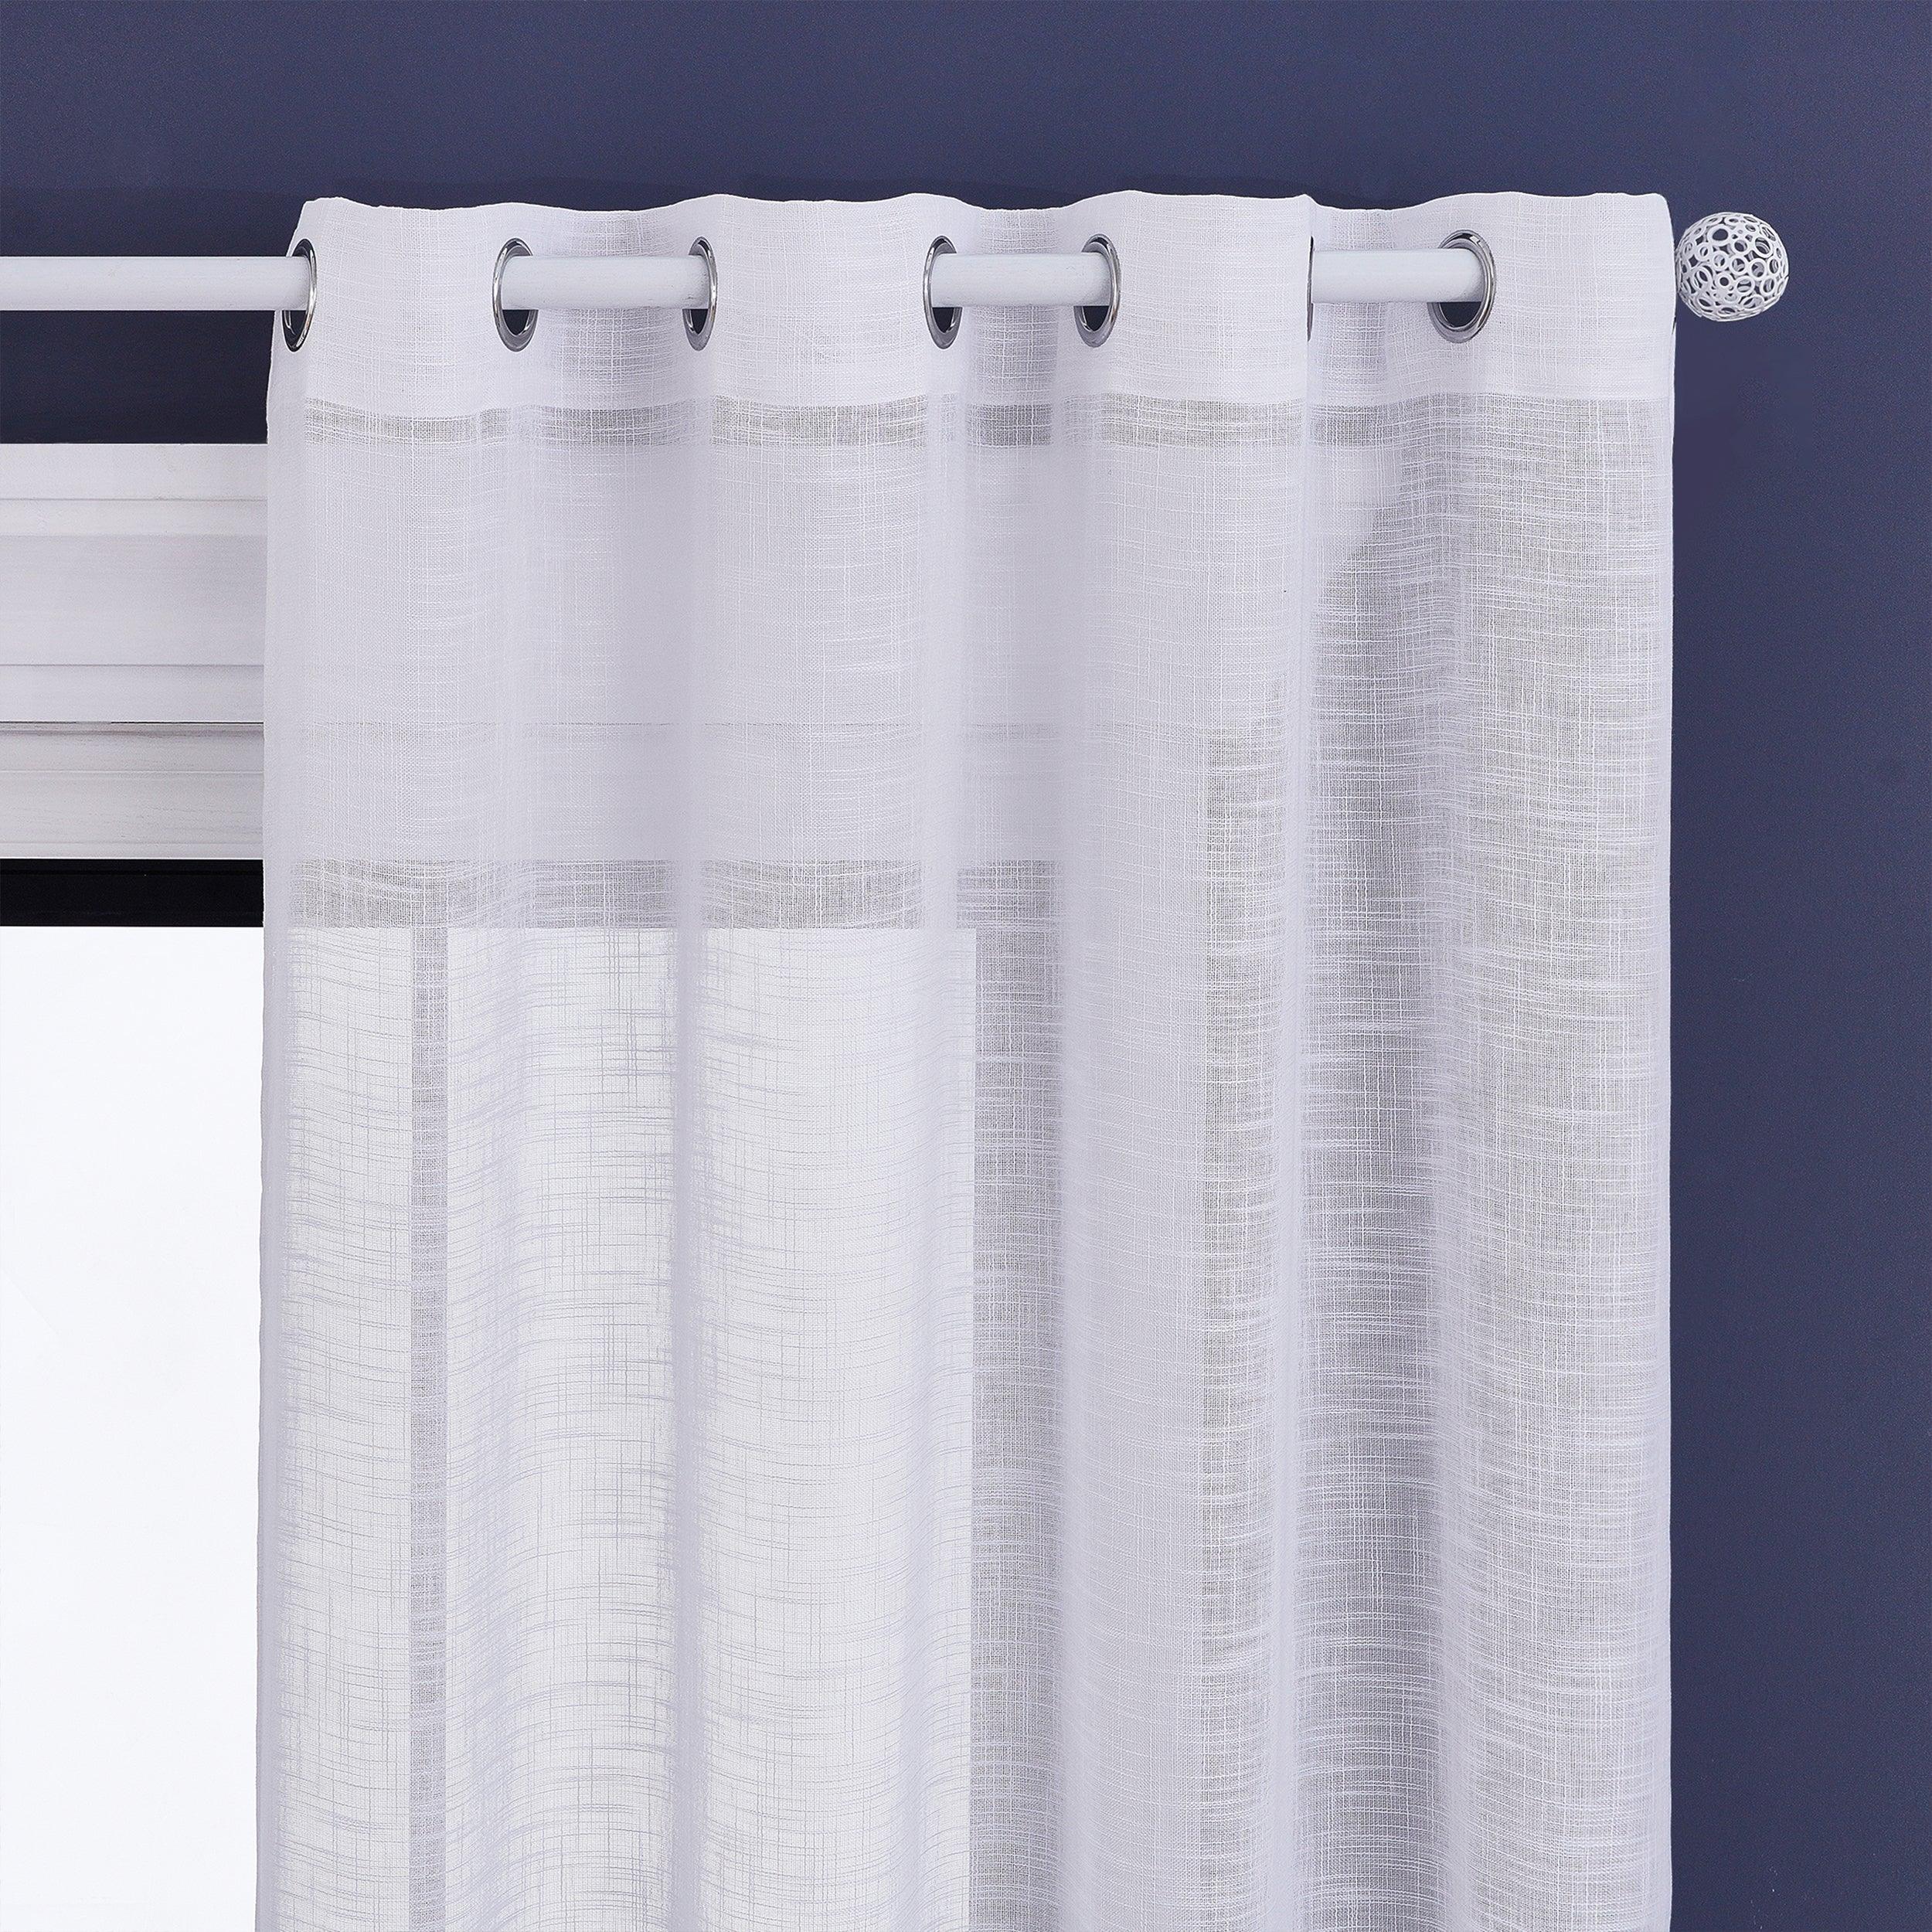 Topfinel Voile sheer curtain panels，Linen Texture Semi Sheer Window curtain for Bedroom Living Room - Topfinel